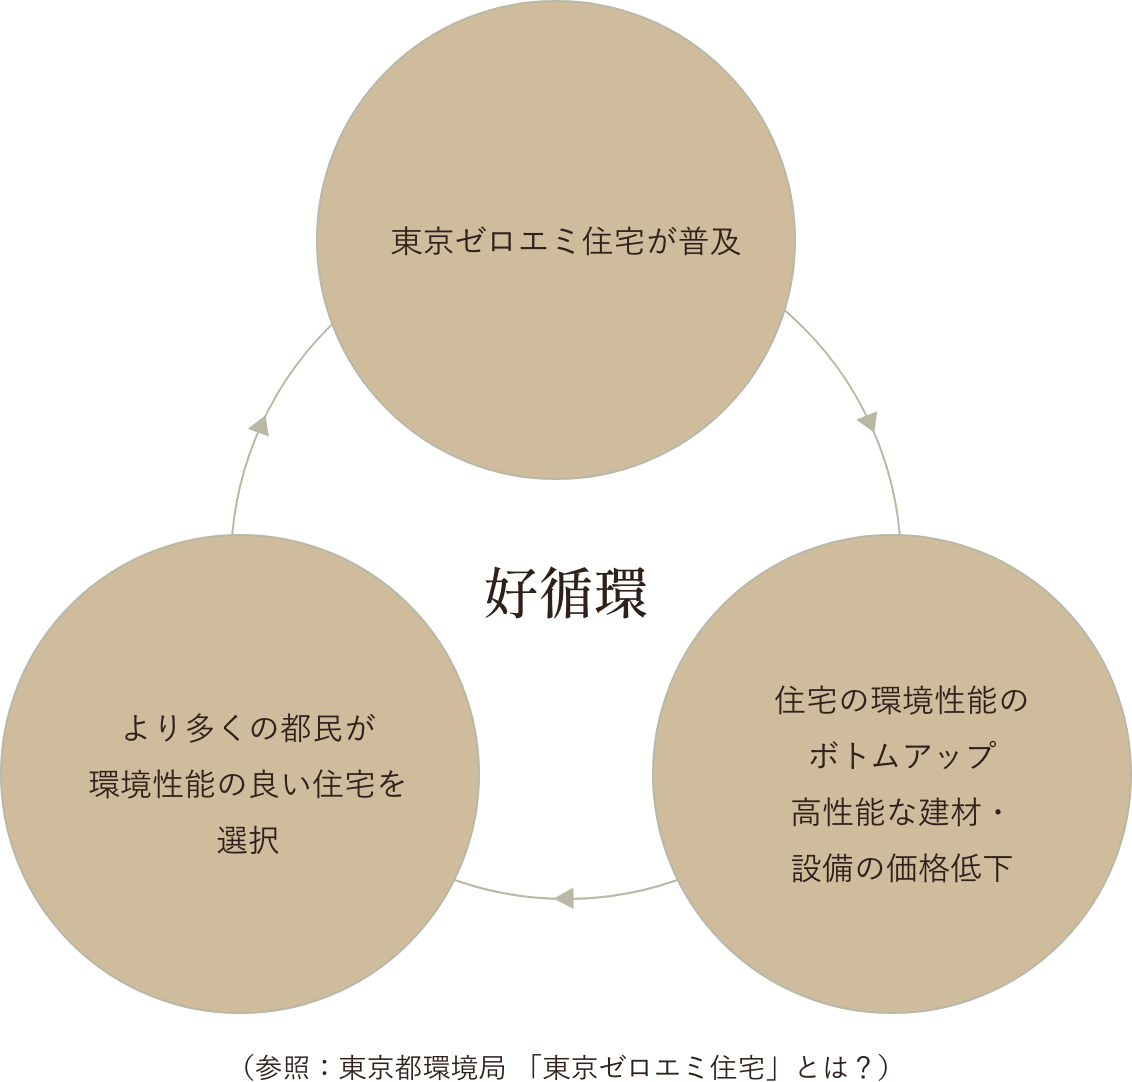 東京ゼロエミ住宅が普及する好循環